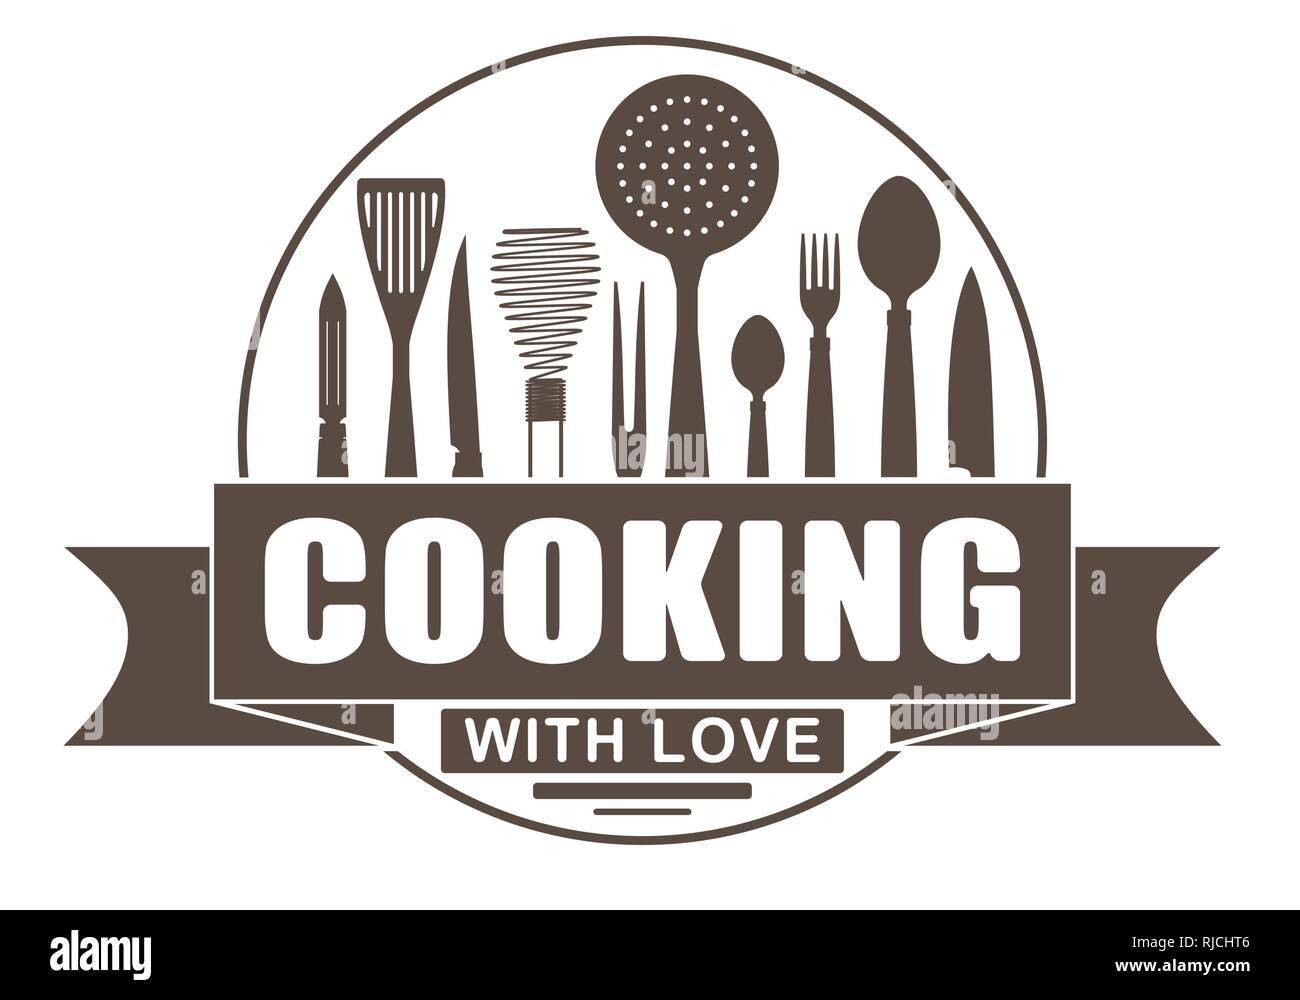 La cuisson à l'amour vecteur conception ronde pour votre logo ou l'emblème avec des bannières et des silhouettes d'ustensiles de cuisine et ustensiles de cuisine. Illustration de Vecteur